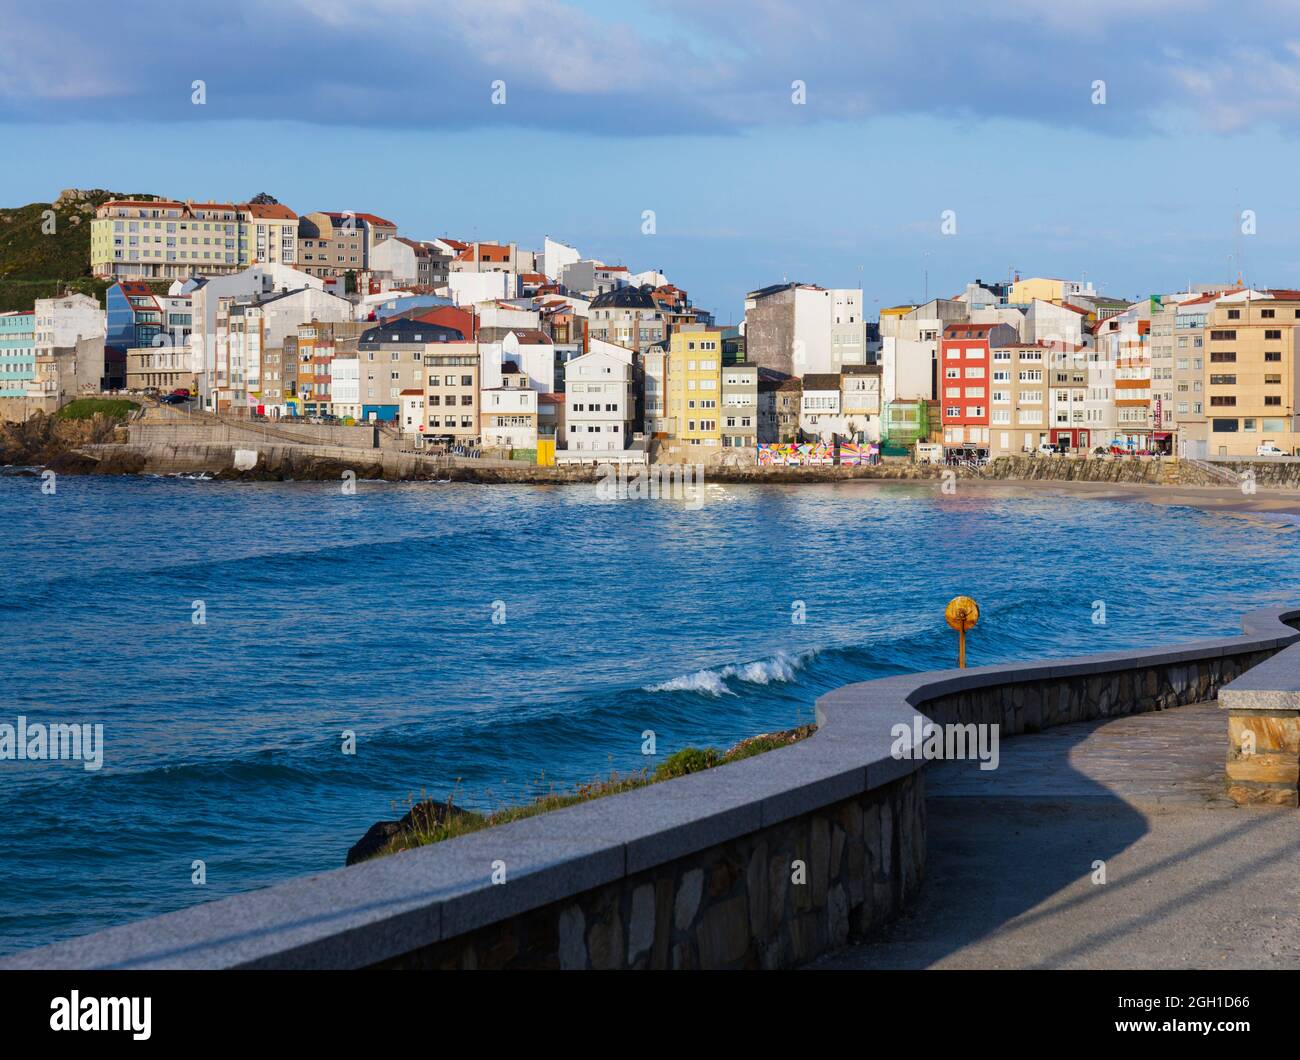 Malpica de Bergantinos, or Malpica, La Coruna, Galicia, Spain. The town seen from Canido beach. Stock Photo